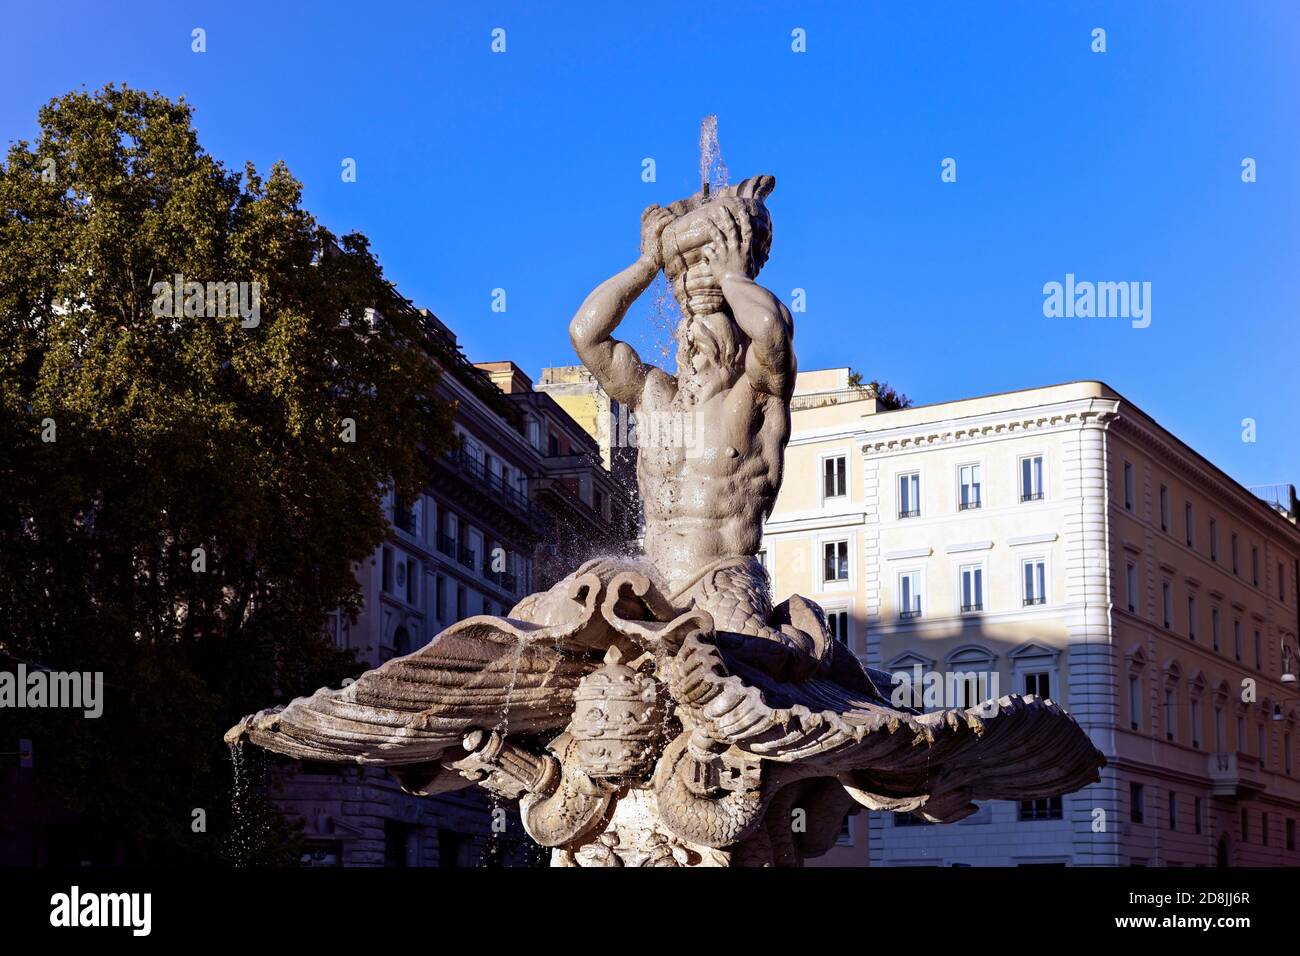 Fontana del Tritone, capolavoro di stile barocco di Bernini, Piazza Barberini, centro storico di Roma, Italia, Europa. Cielo blu chiaro, spazio di copia. Foto Stock